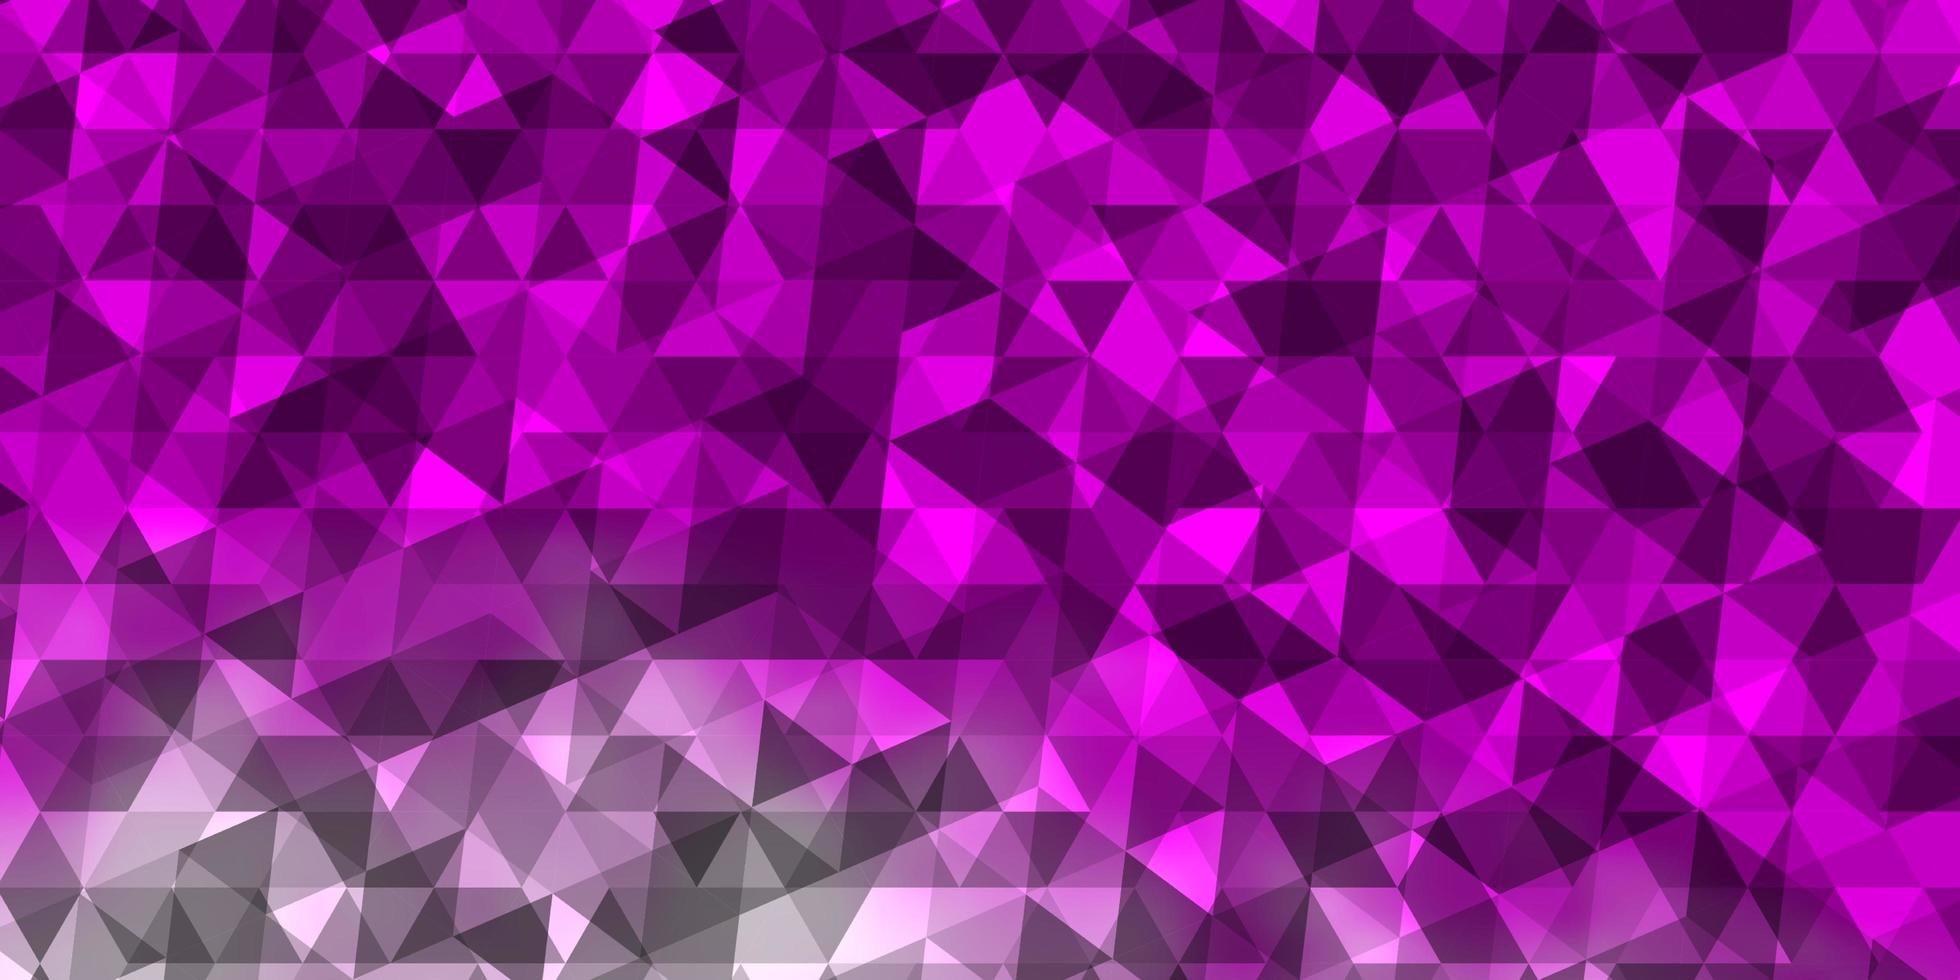 layout de vetor roxo claro, rosa com linhas, triângulos.